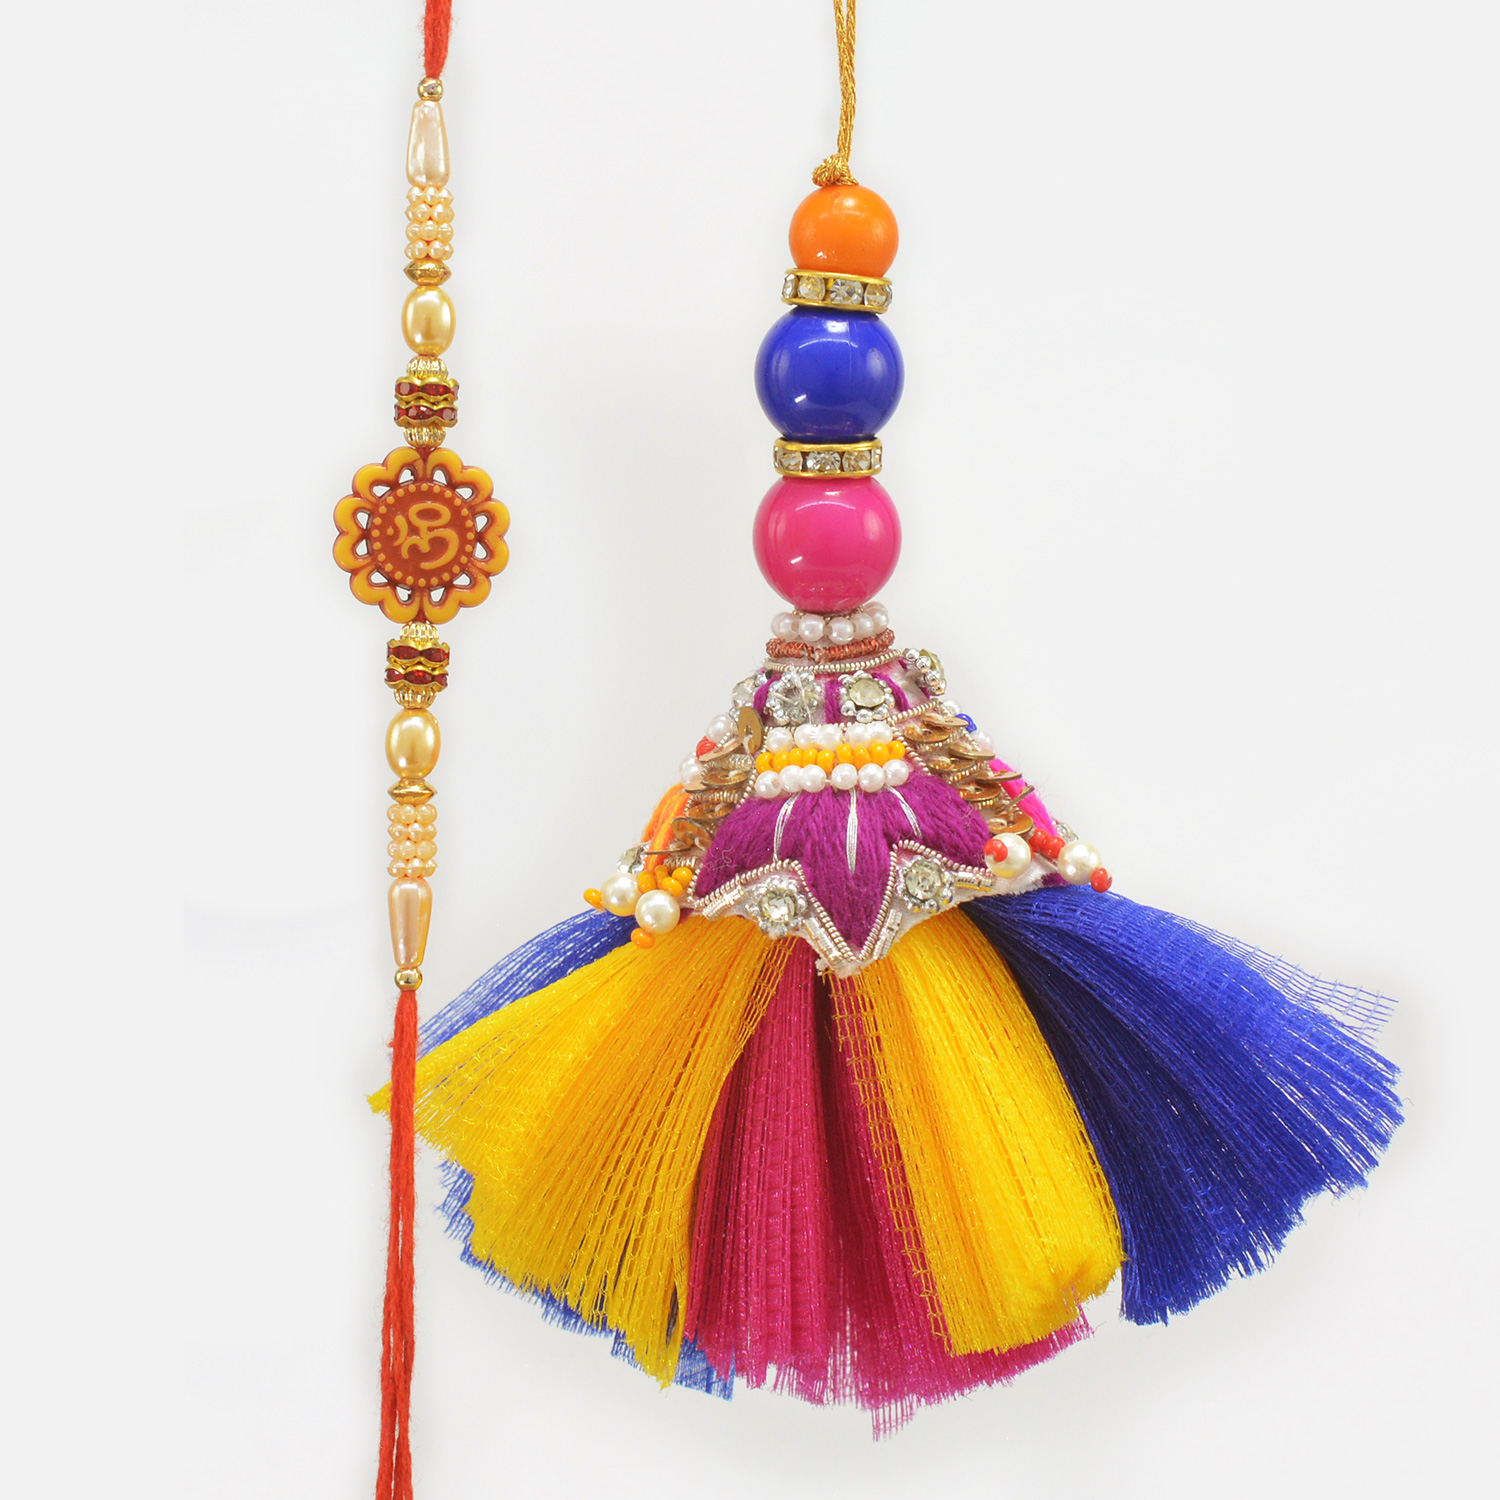 Om Floral Creamy Beads Rakhi with Colorful Eye Catching Lumba Amazing Bhaiya Bhabhi Rakhi Set